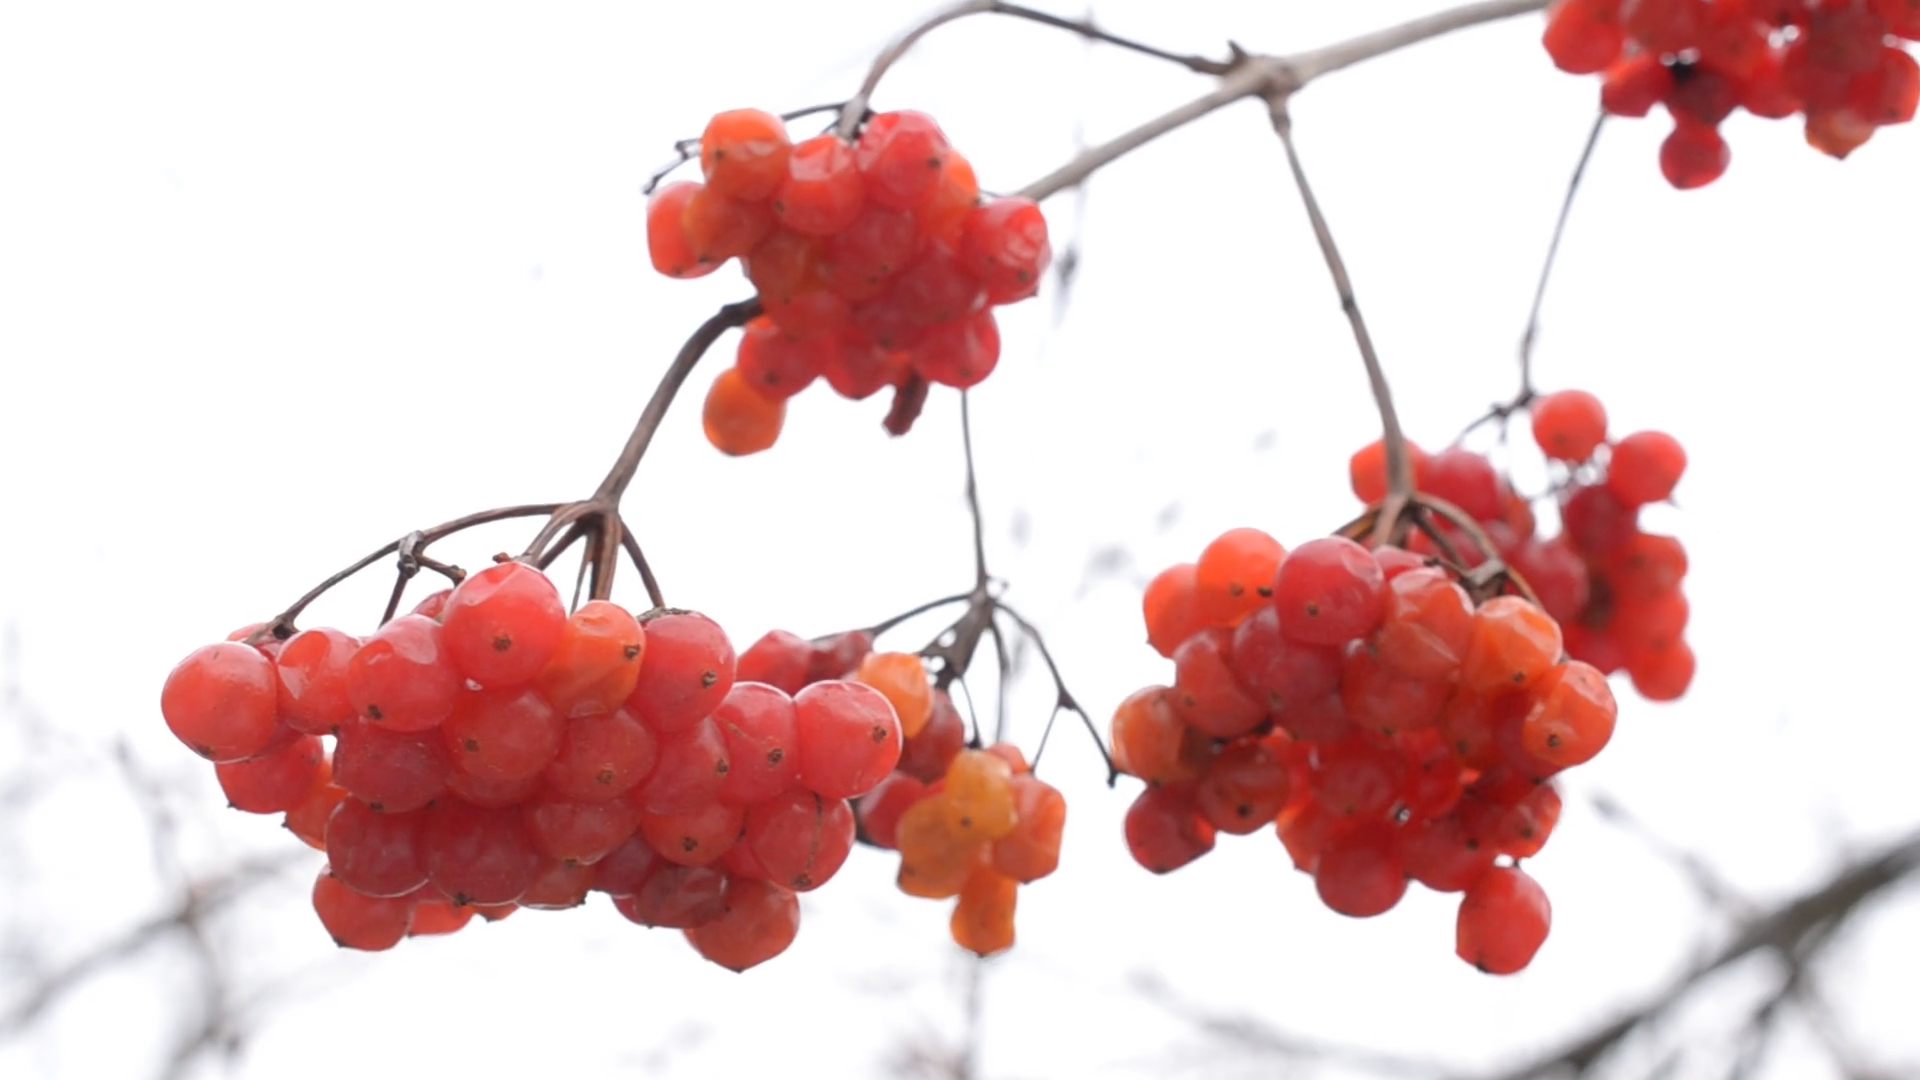 Ripe red arrowwood or viburnum berries in winter Stock Video Footage ...